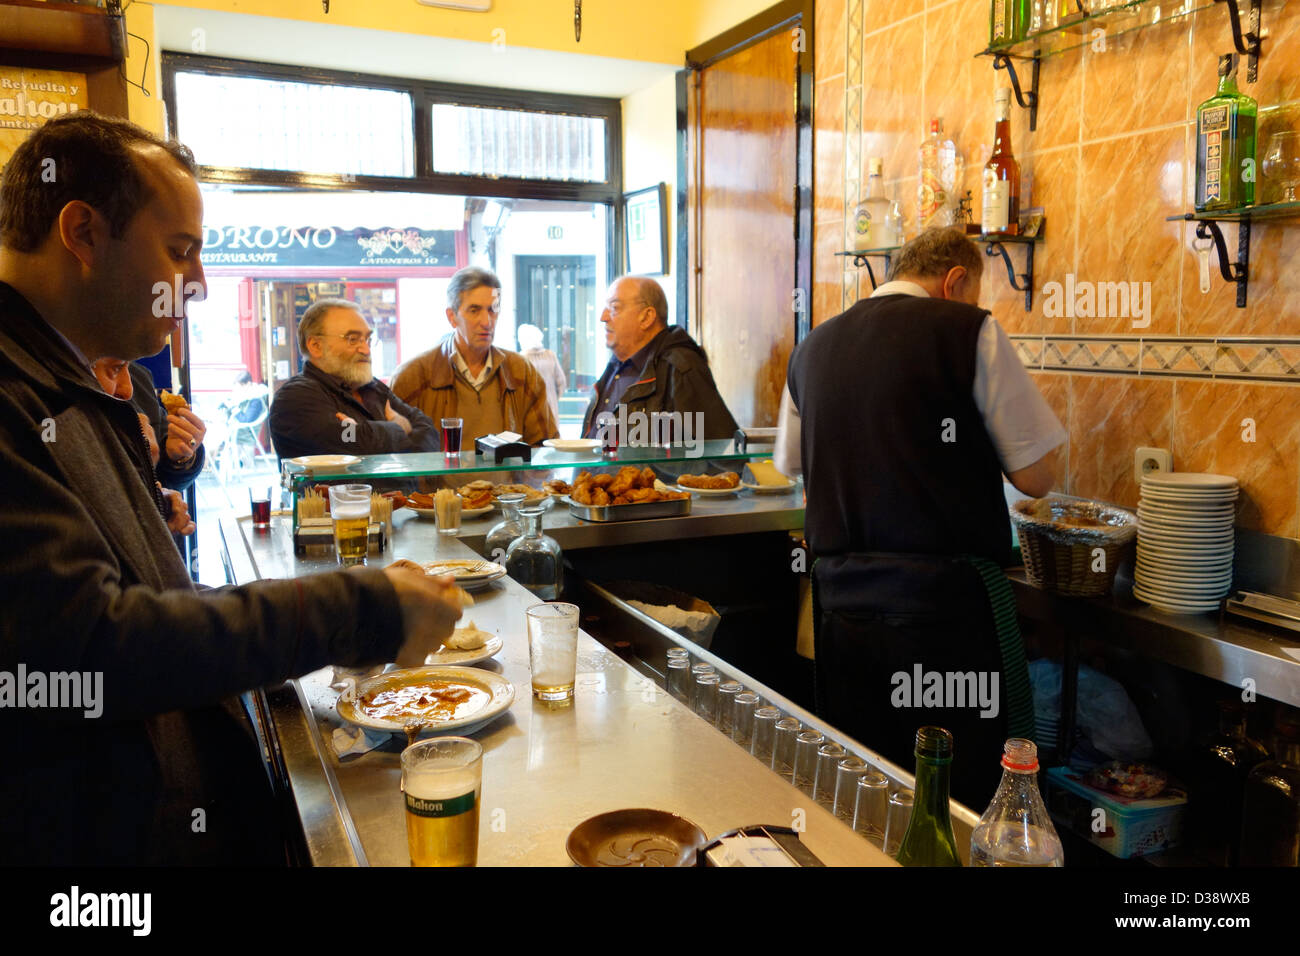 Casa revuelta madrid spagna bar birra uomini cod Foto Stock